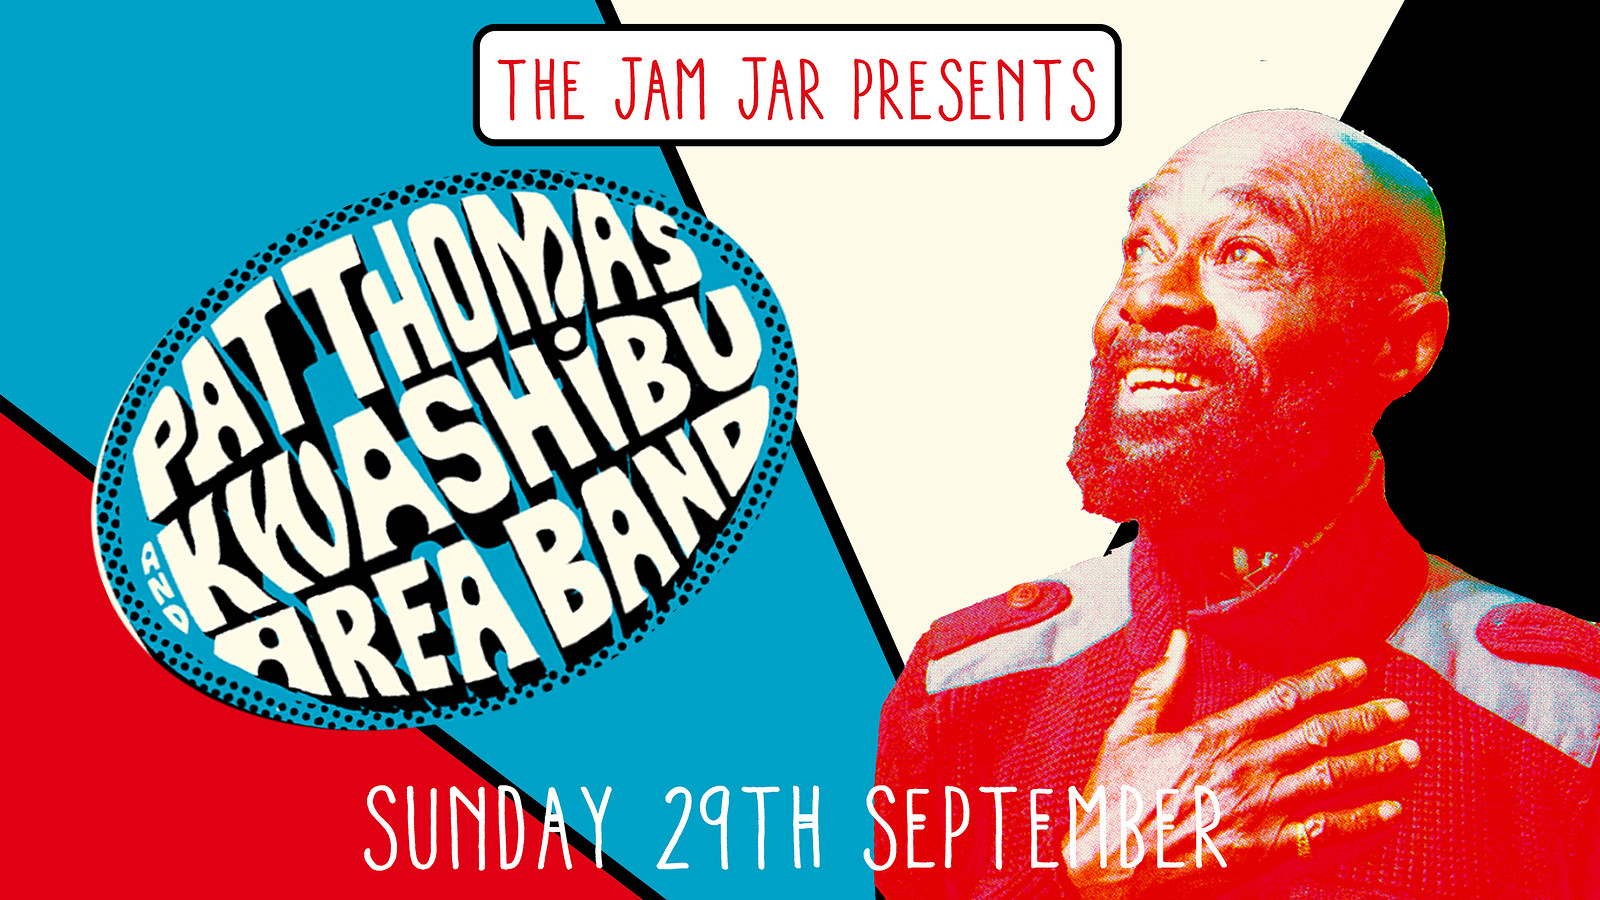 Pat Thomas & Kwashibu Area Band at Jam Jar